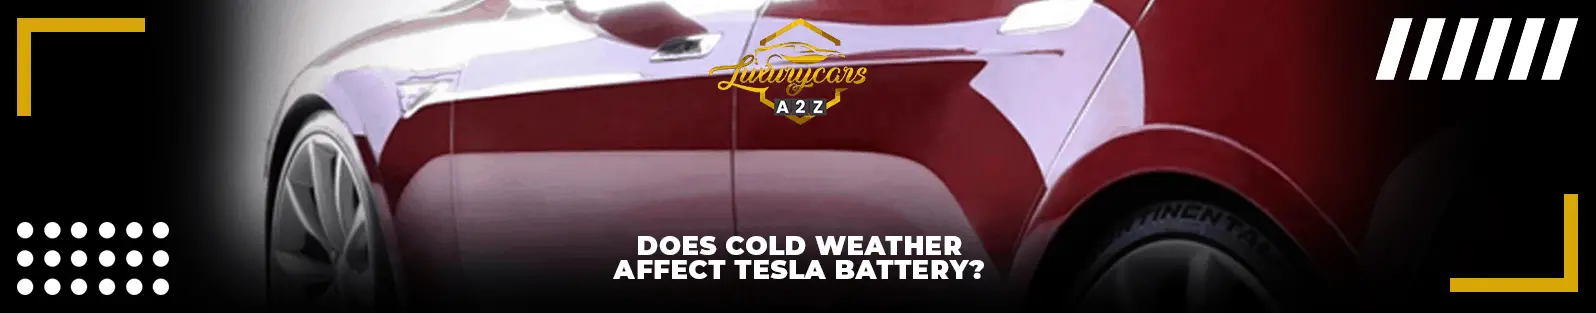 Le froid affecte-t-il la batterie des Tesla ?